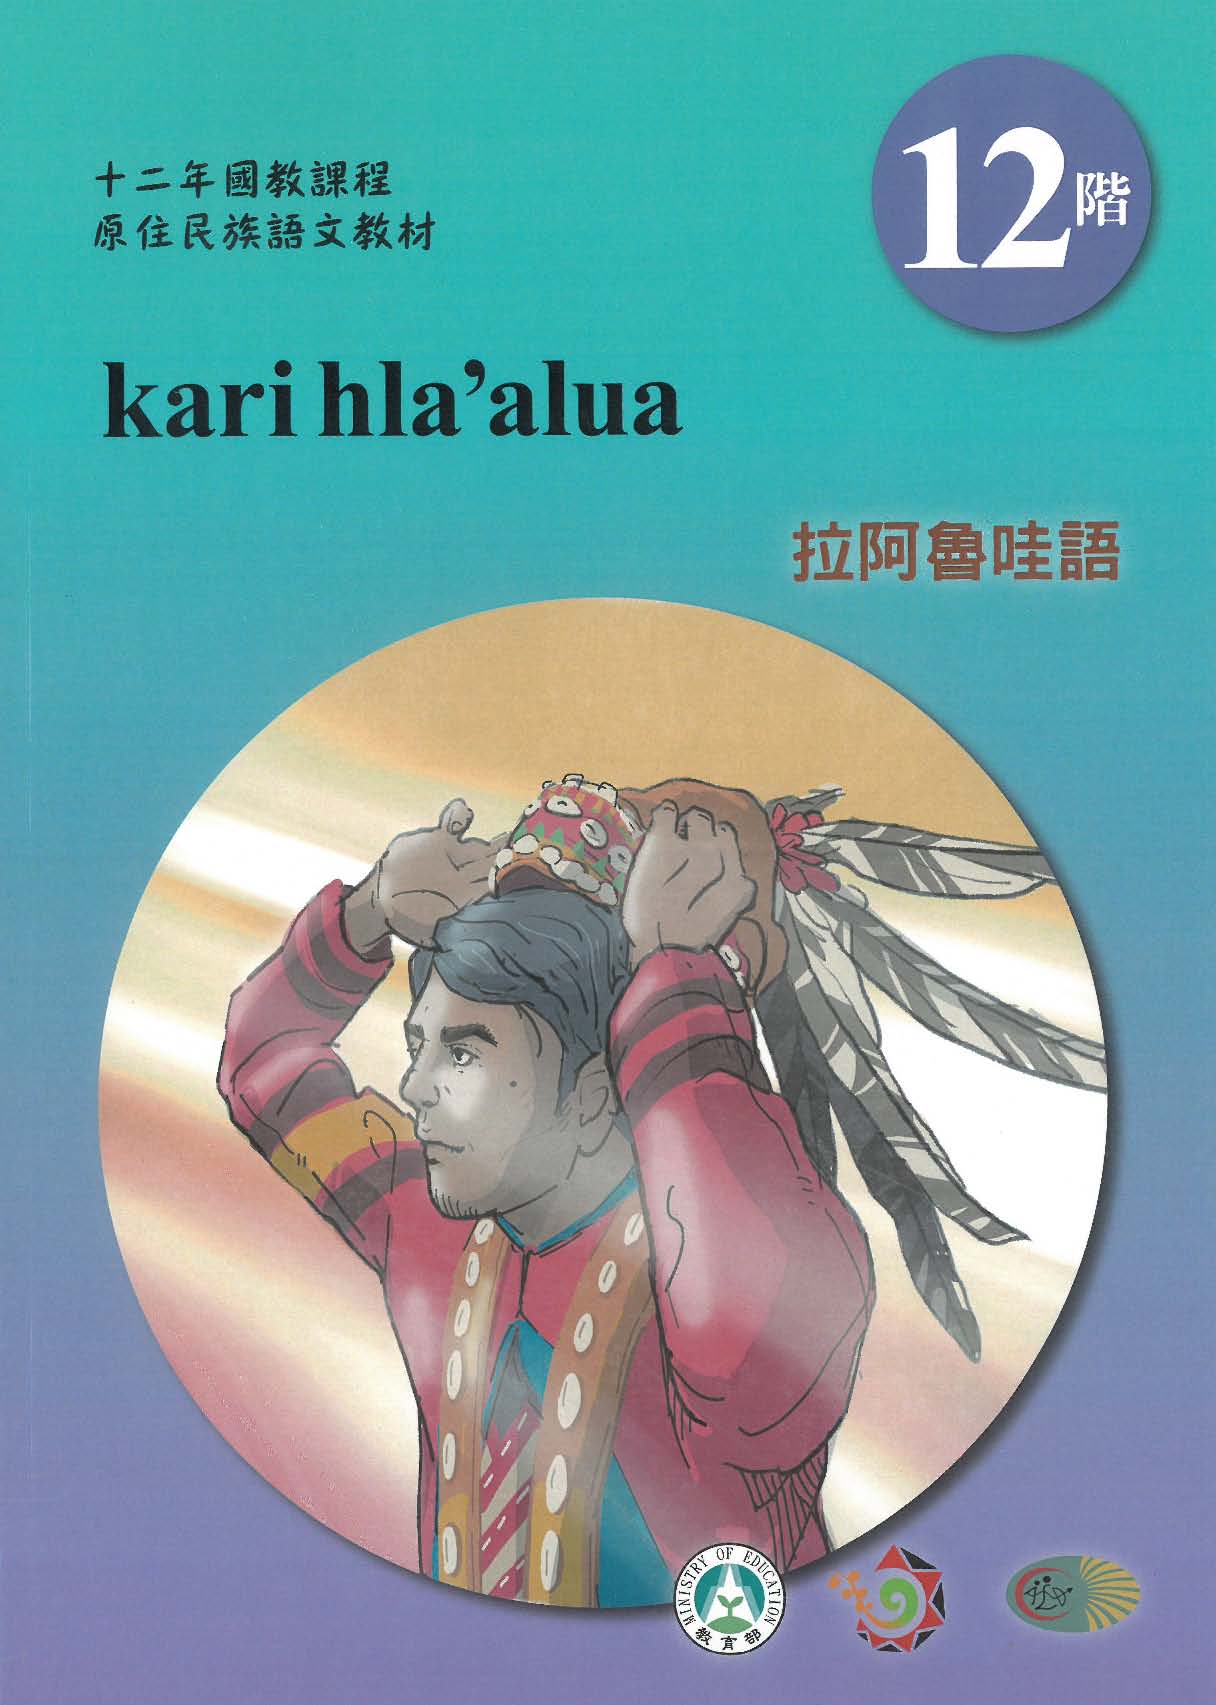 十二年國教原住民族語文教材 拉阿魯哇語 學習手冊 第12階